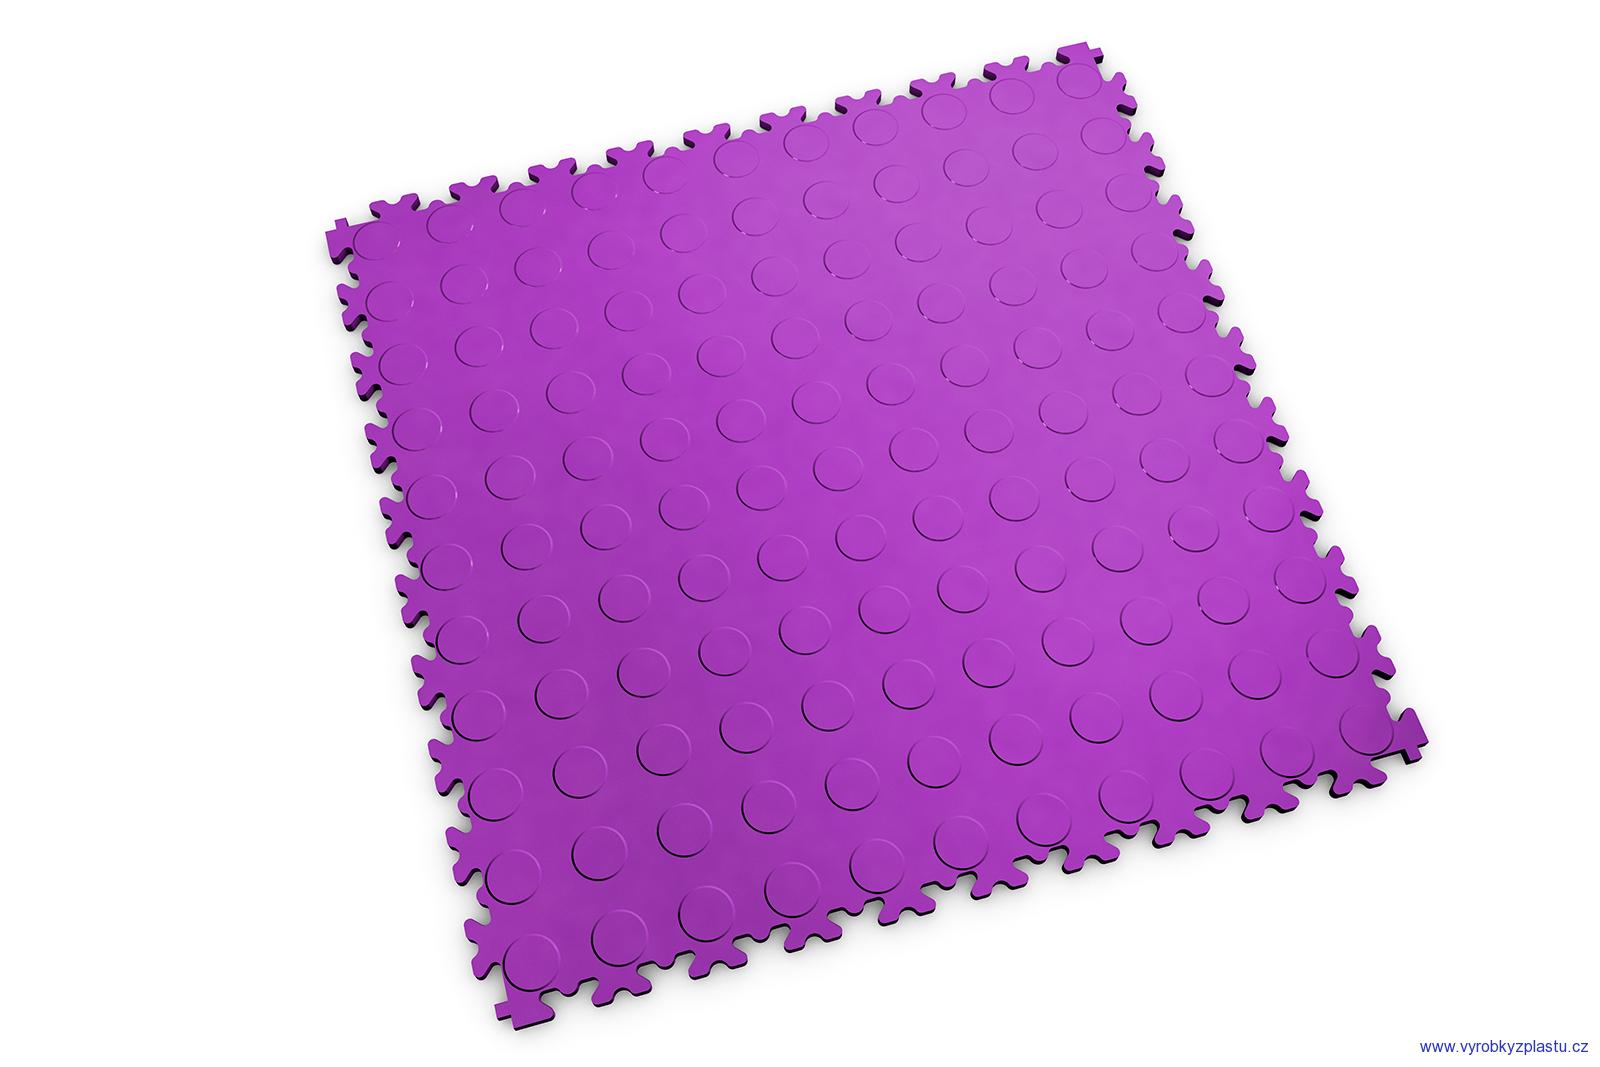 2080 (penízky) - dlaždice pro střední zátěž - Purple